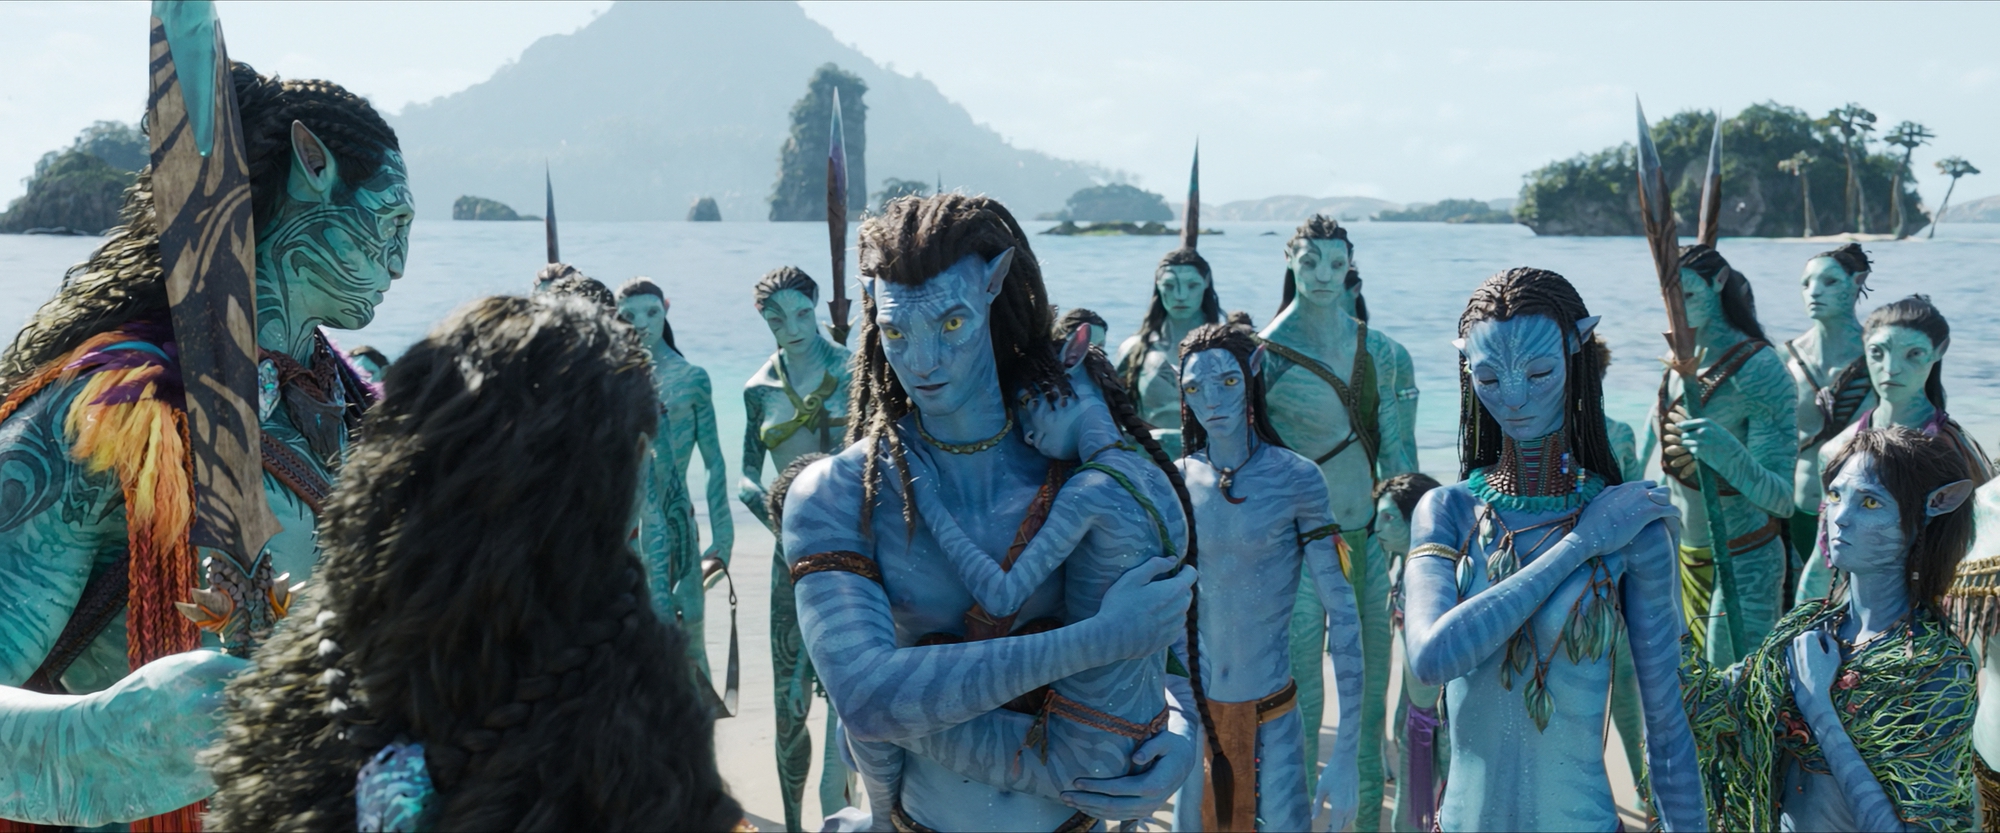 Avatar 2 thu 434 triệu USD mở màn: Kỳ tích hay thất vọng? - Ảnh 3.